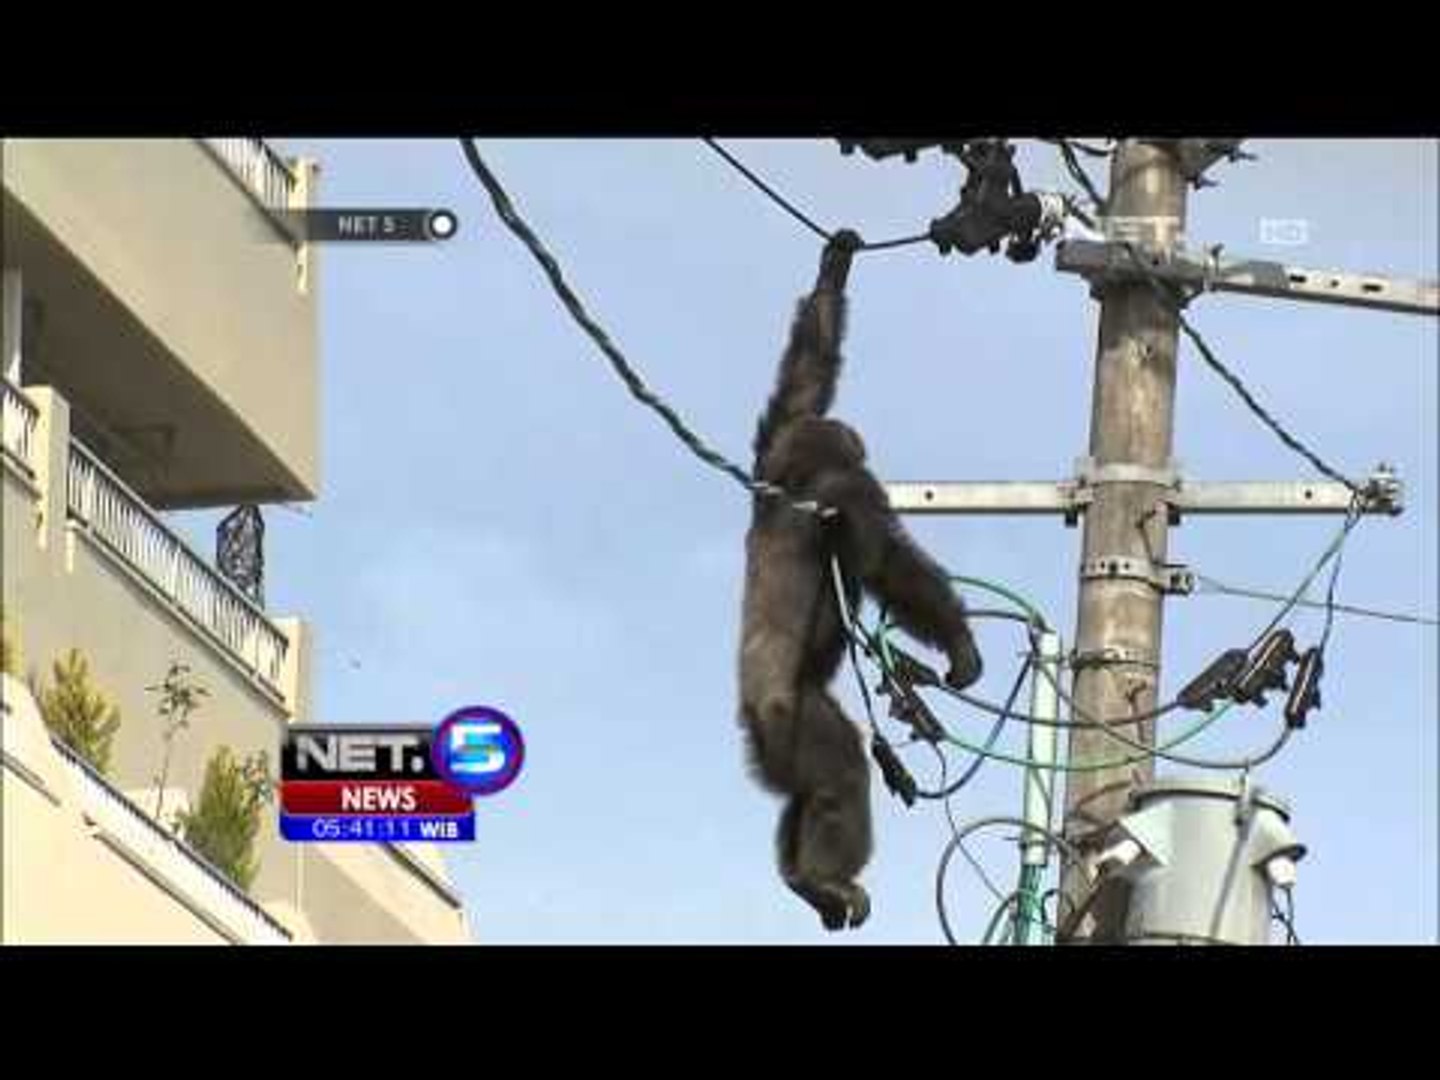 Simpanse Kabur dari Kebun Binatang - NET5